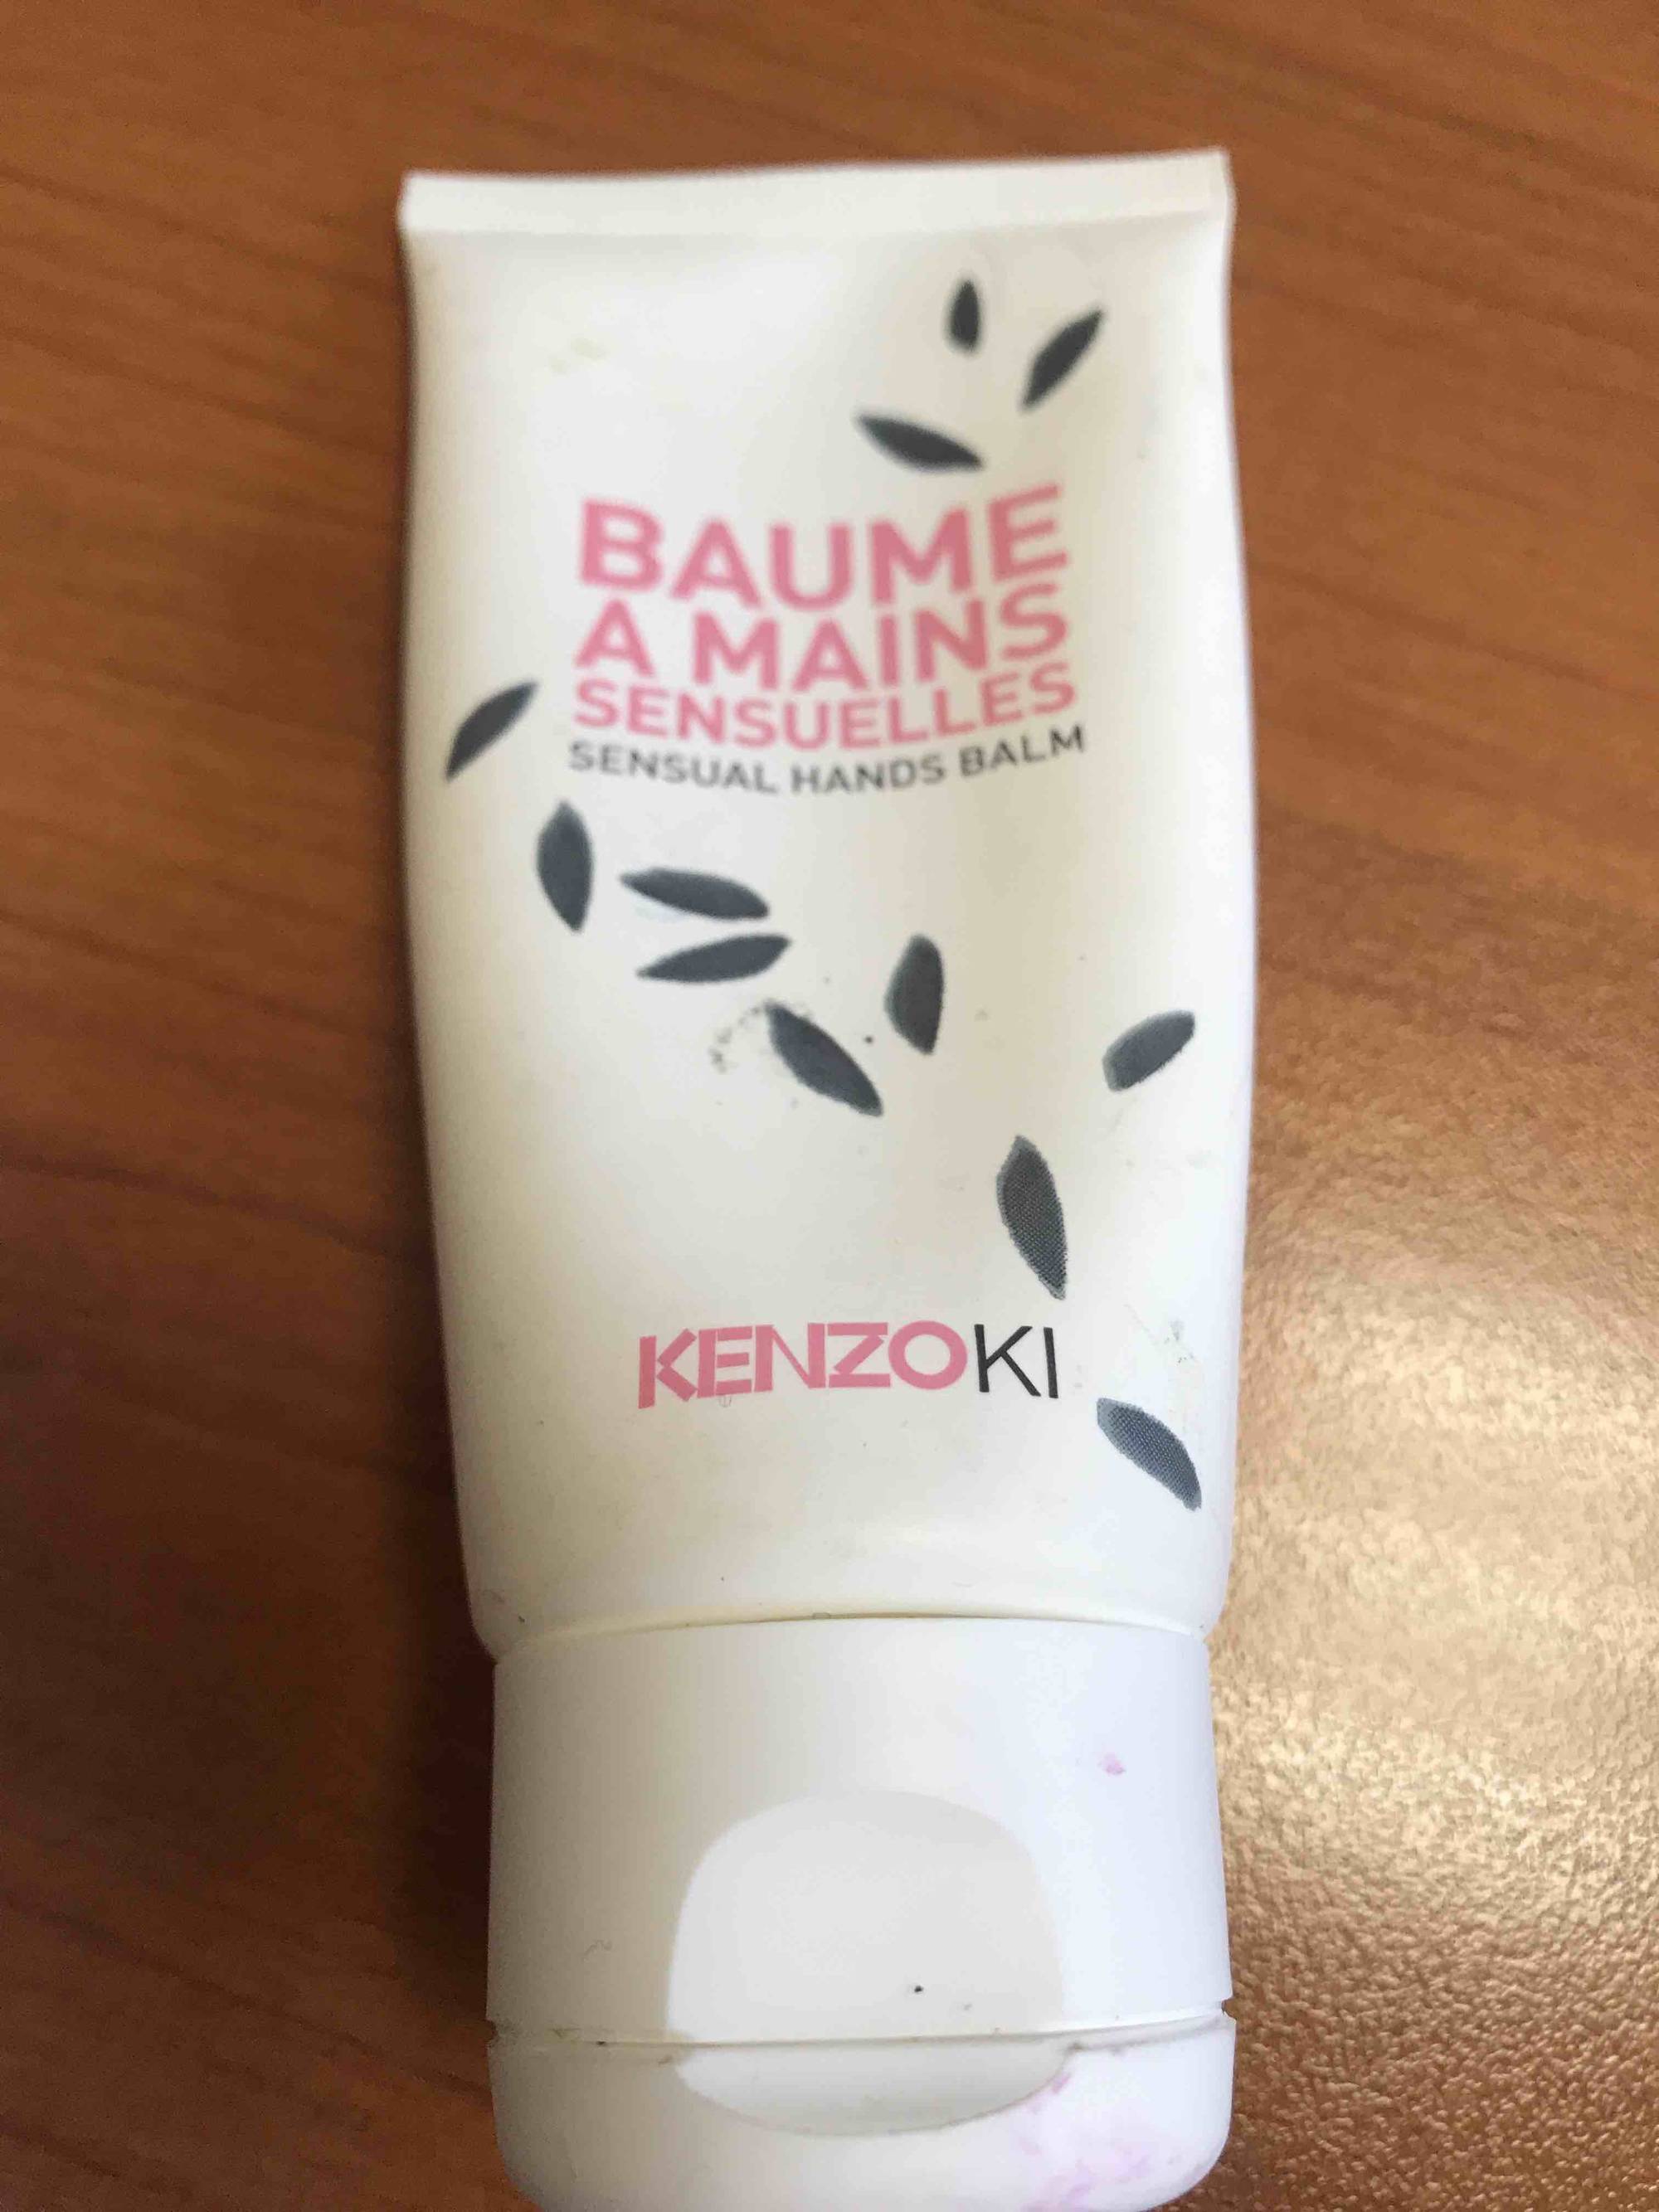 KENZOKI - Baume à mains sensuelles